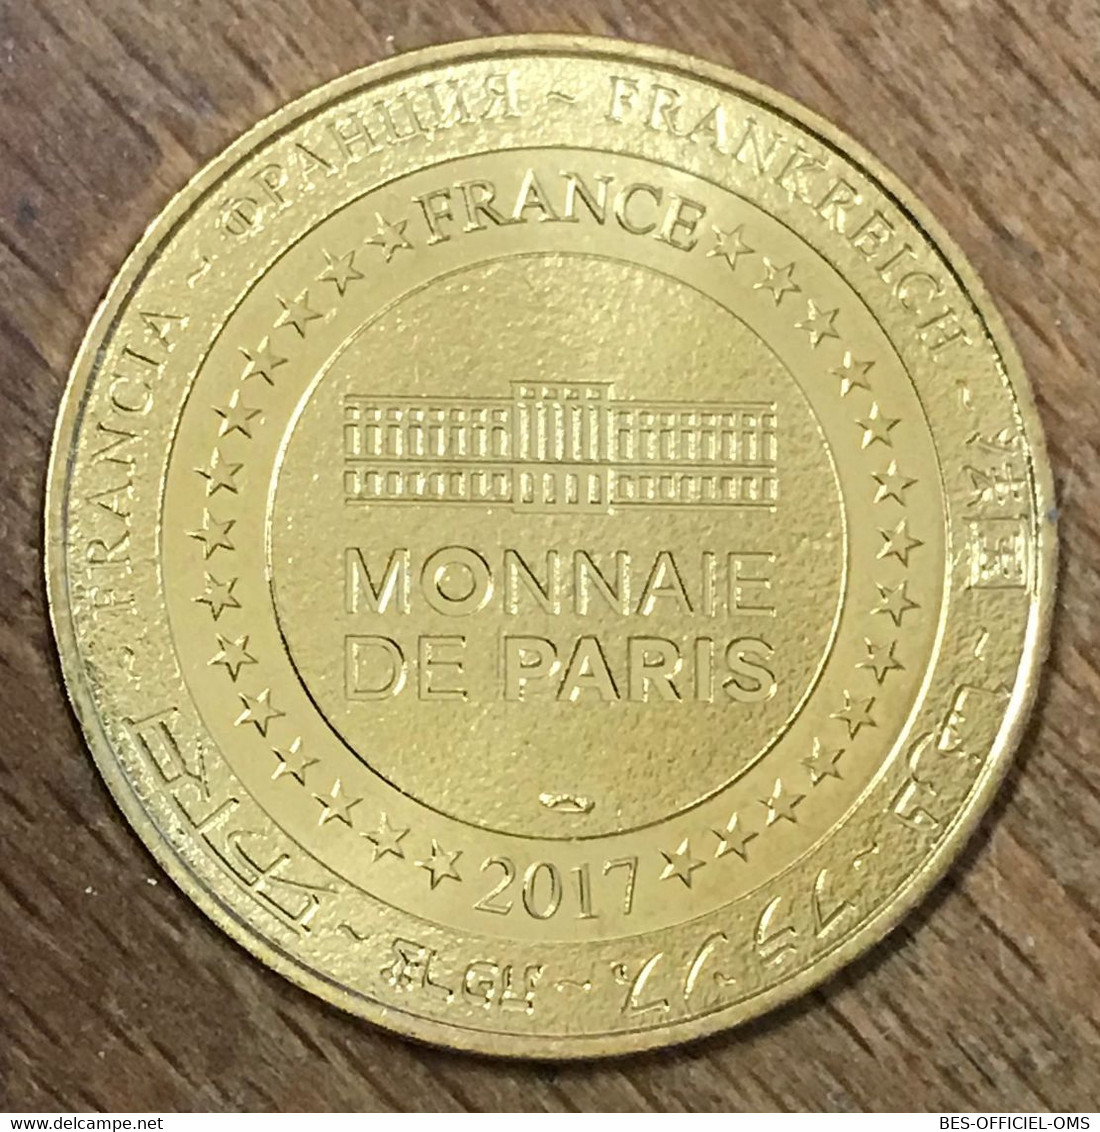 89 AUXERRE ABBAYE SAINT-GERMAIN MDP 2017 MÉDAILLE MONNAIE DE PARIS JETON TOURISTIQUE MEDALS COINS TOKENS - 2017